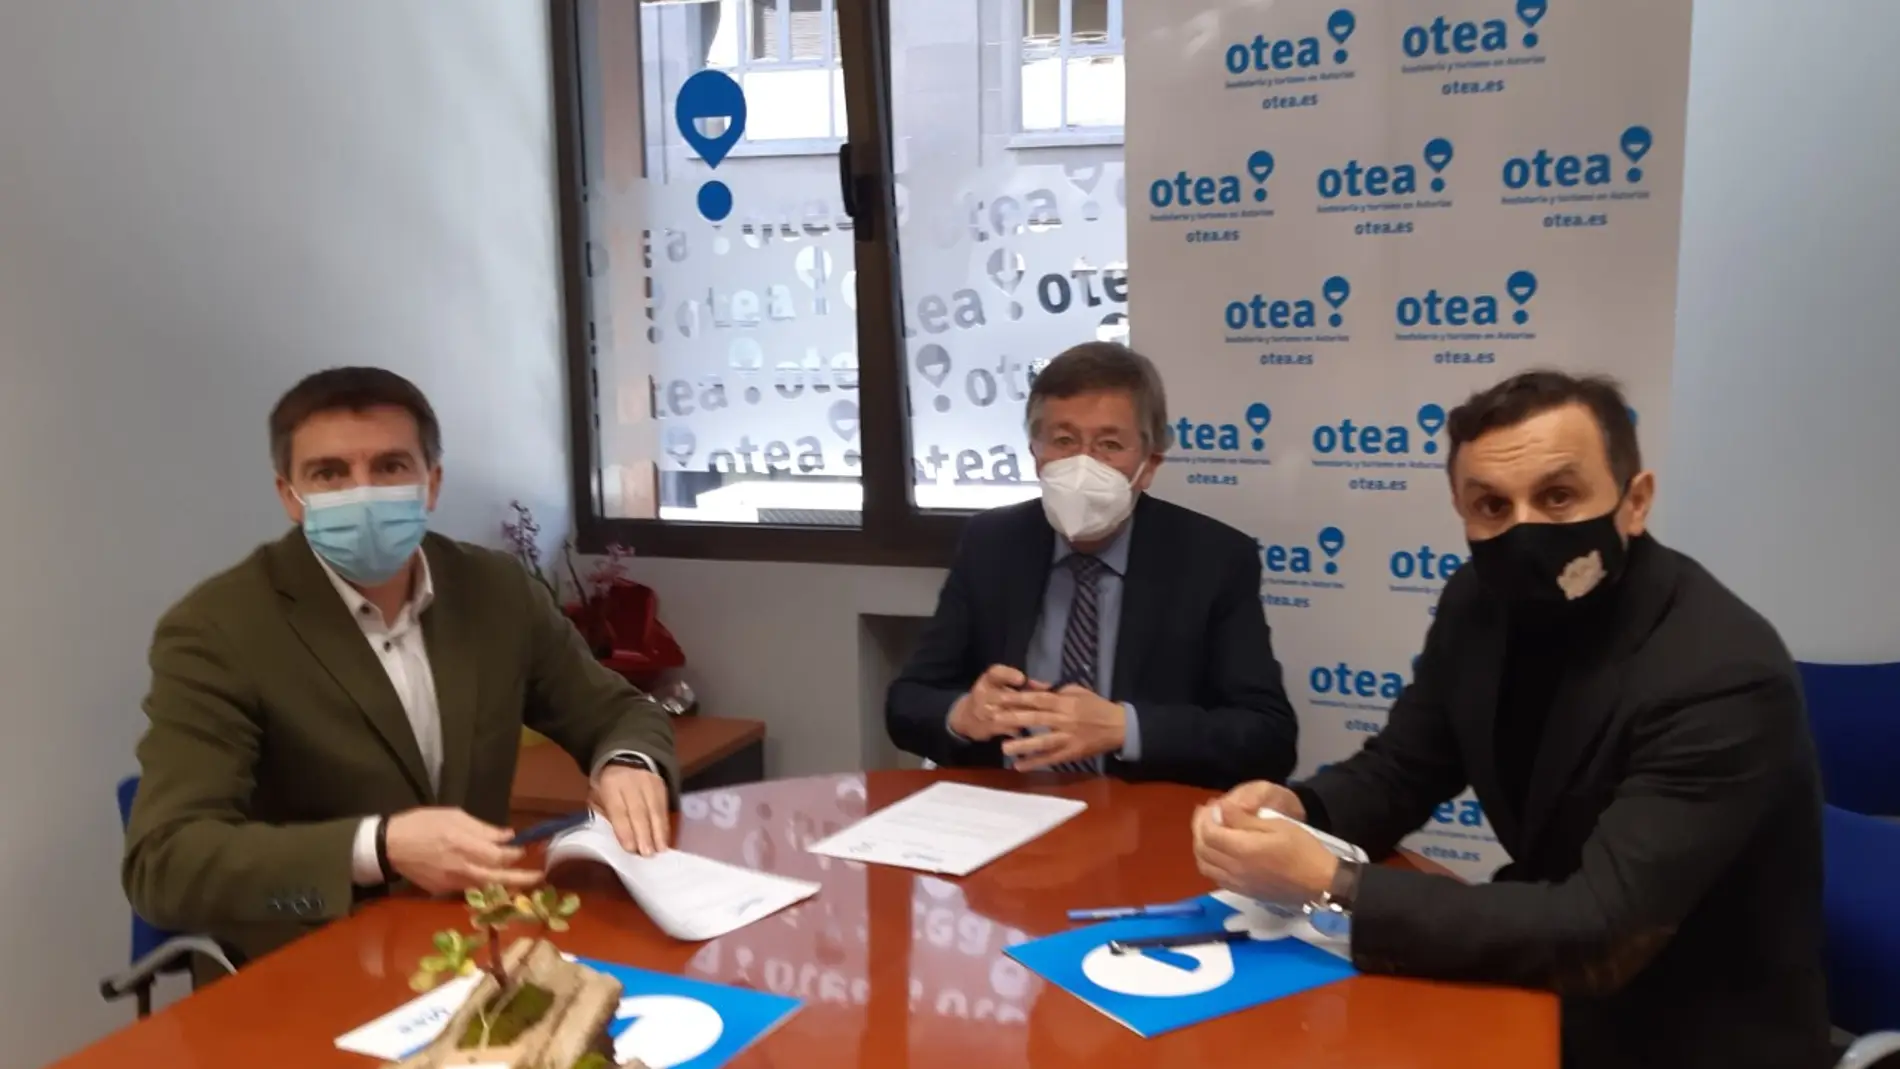 20 agencias de viajes radicadas en Asturias han cerrado en el último año